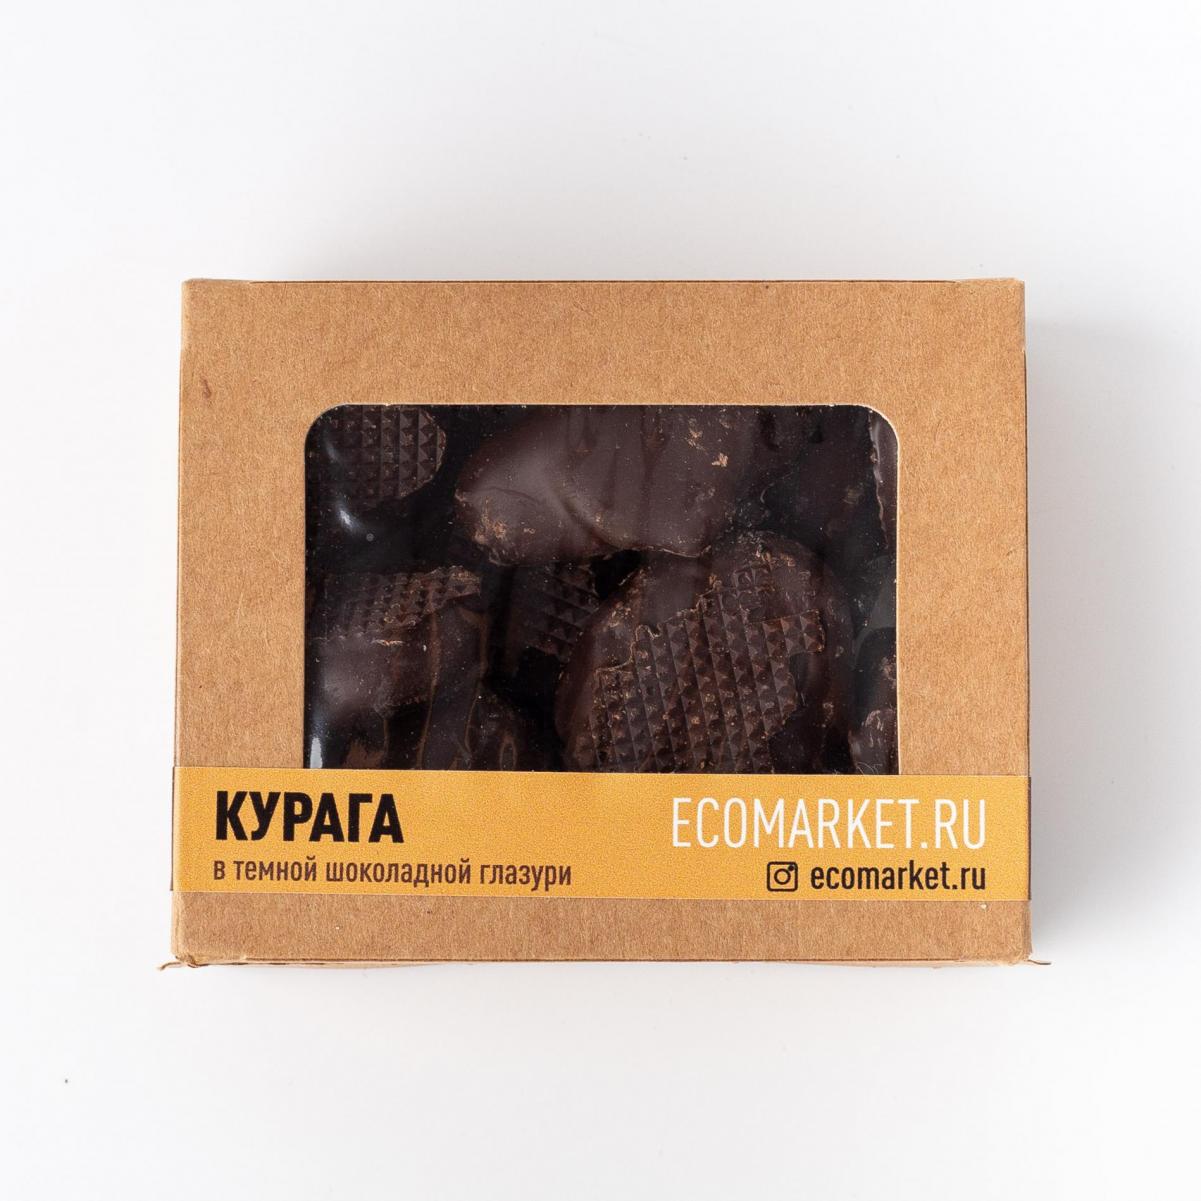 Курага в темной шоколадной глазури Ecomarket.ru ~ 155 г